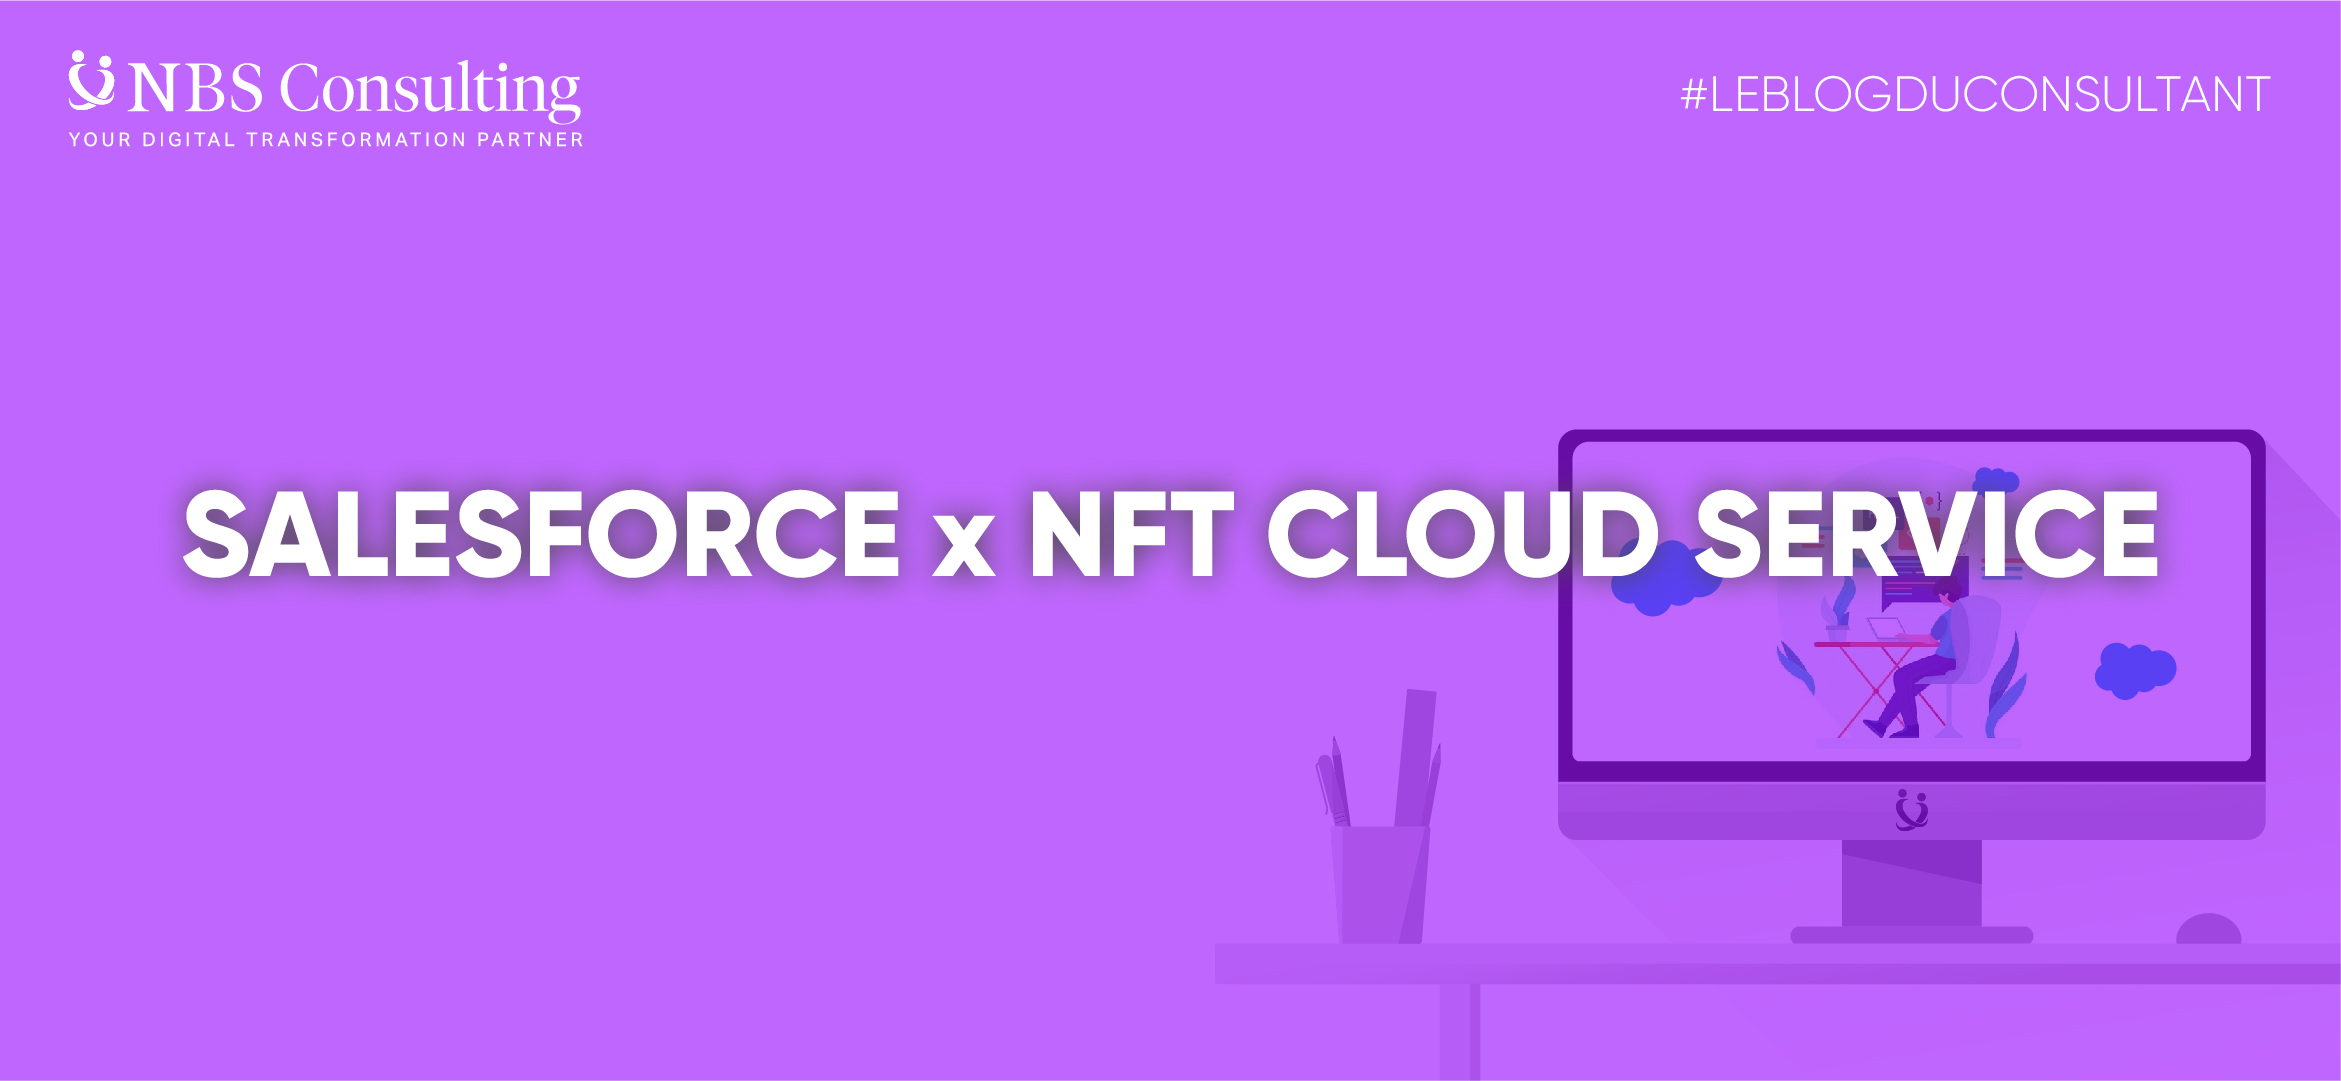 LE BLOG DU CONSULTANT : Salesforce envisage NFT Cloud Service